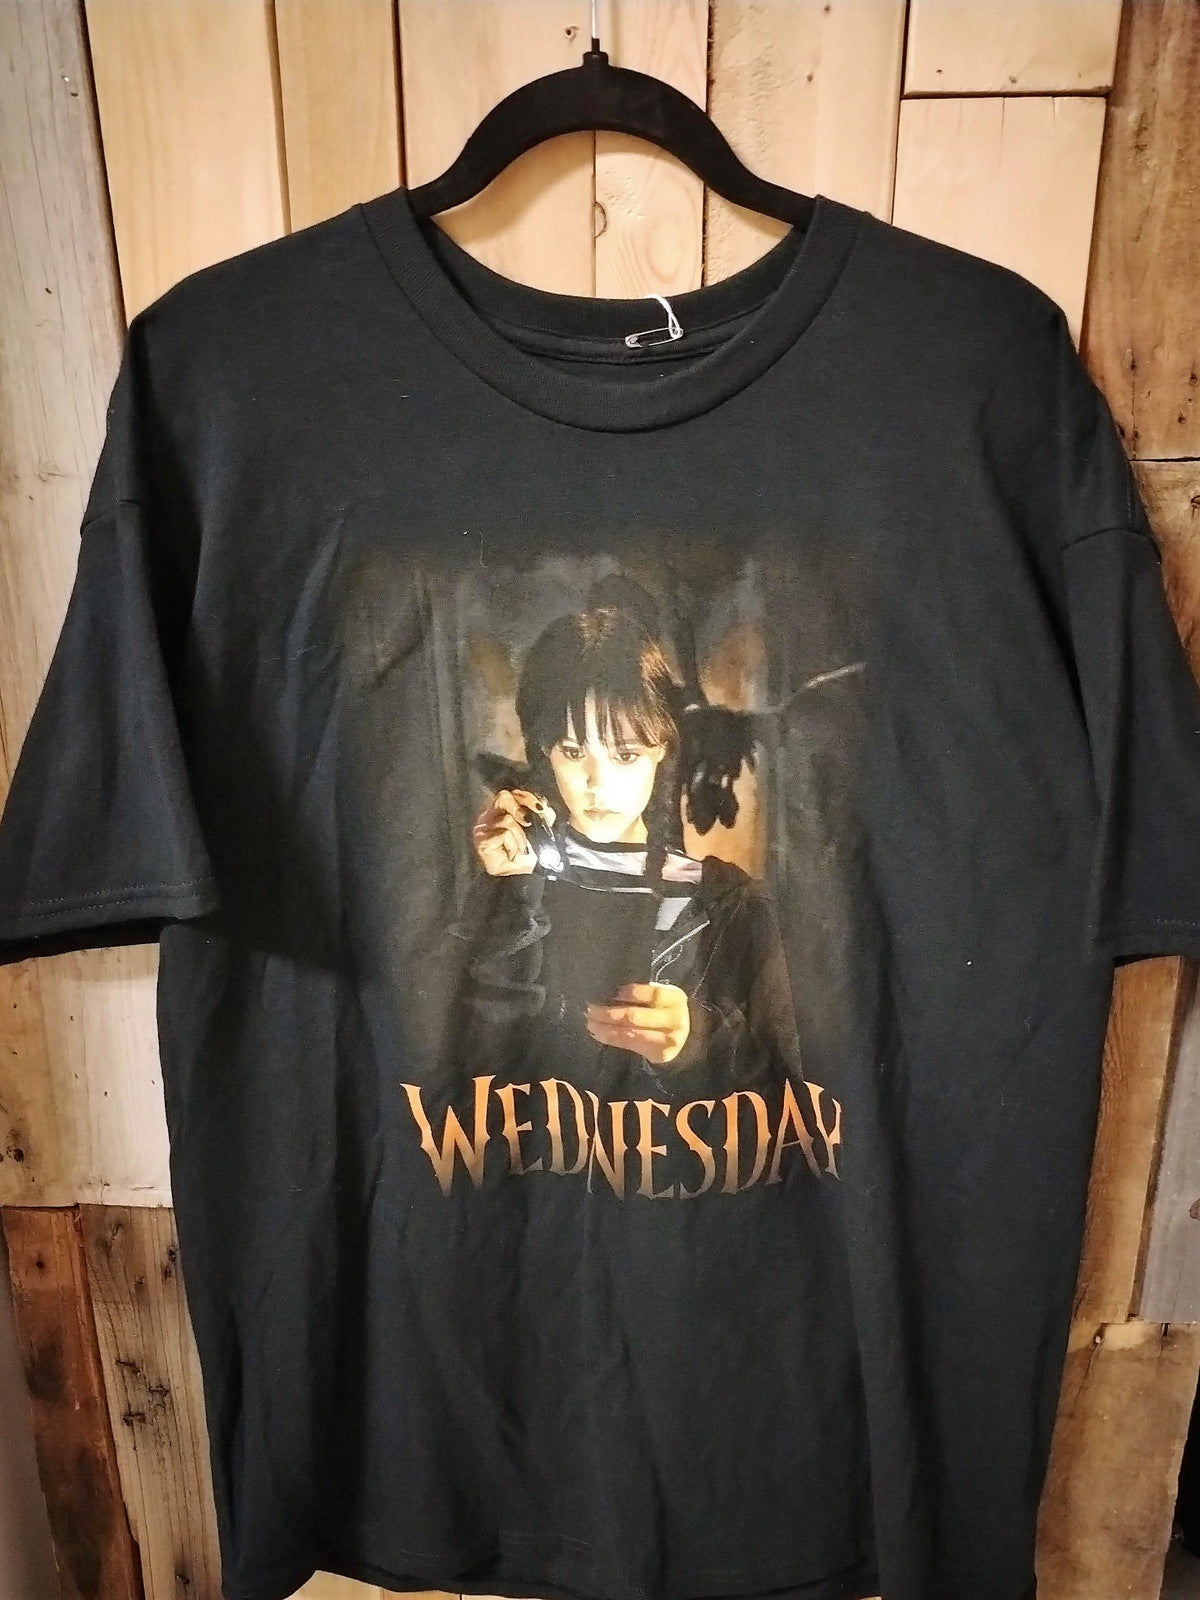 Wednesday XL Tee Shirt- New